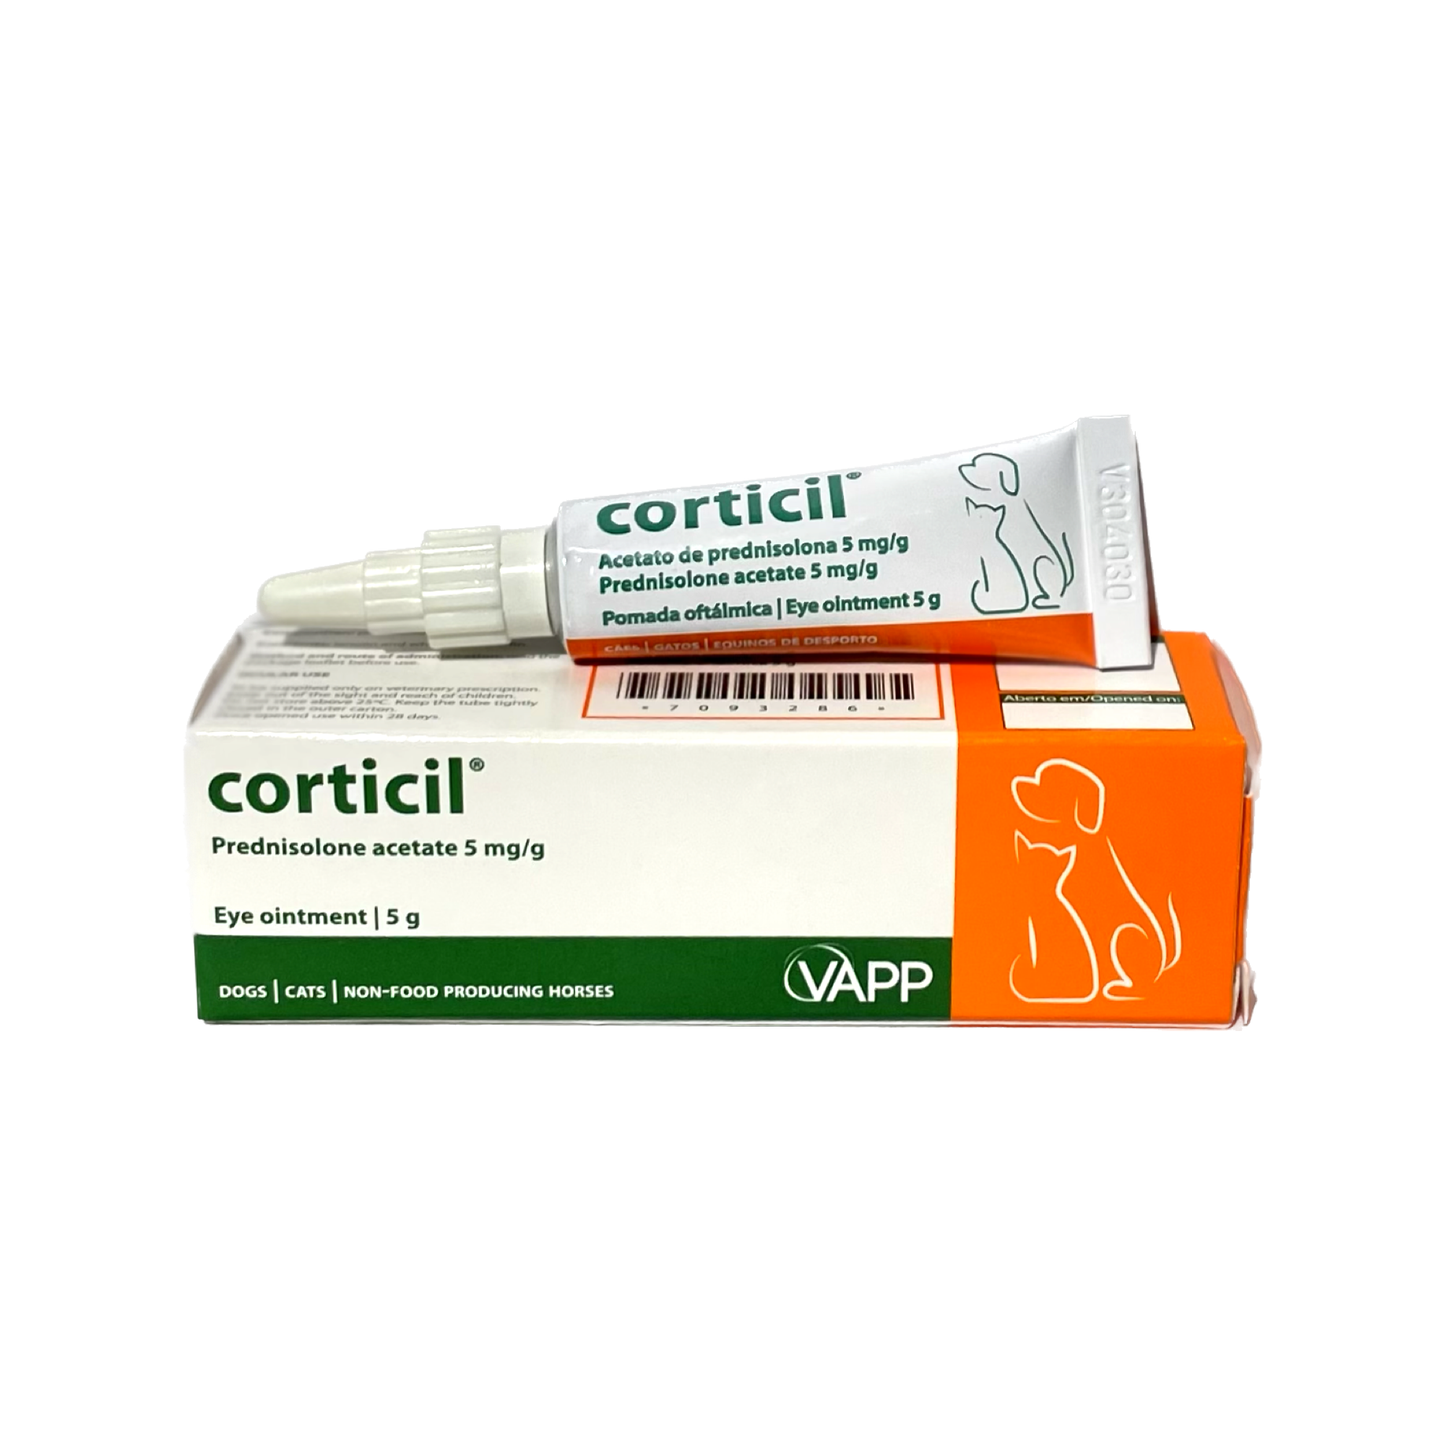 Corticil 5g (Prednisolon)